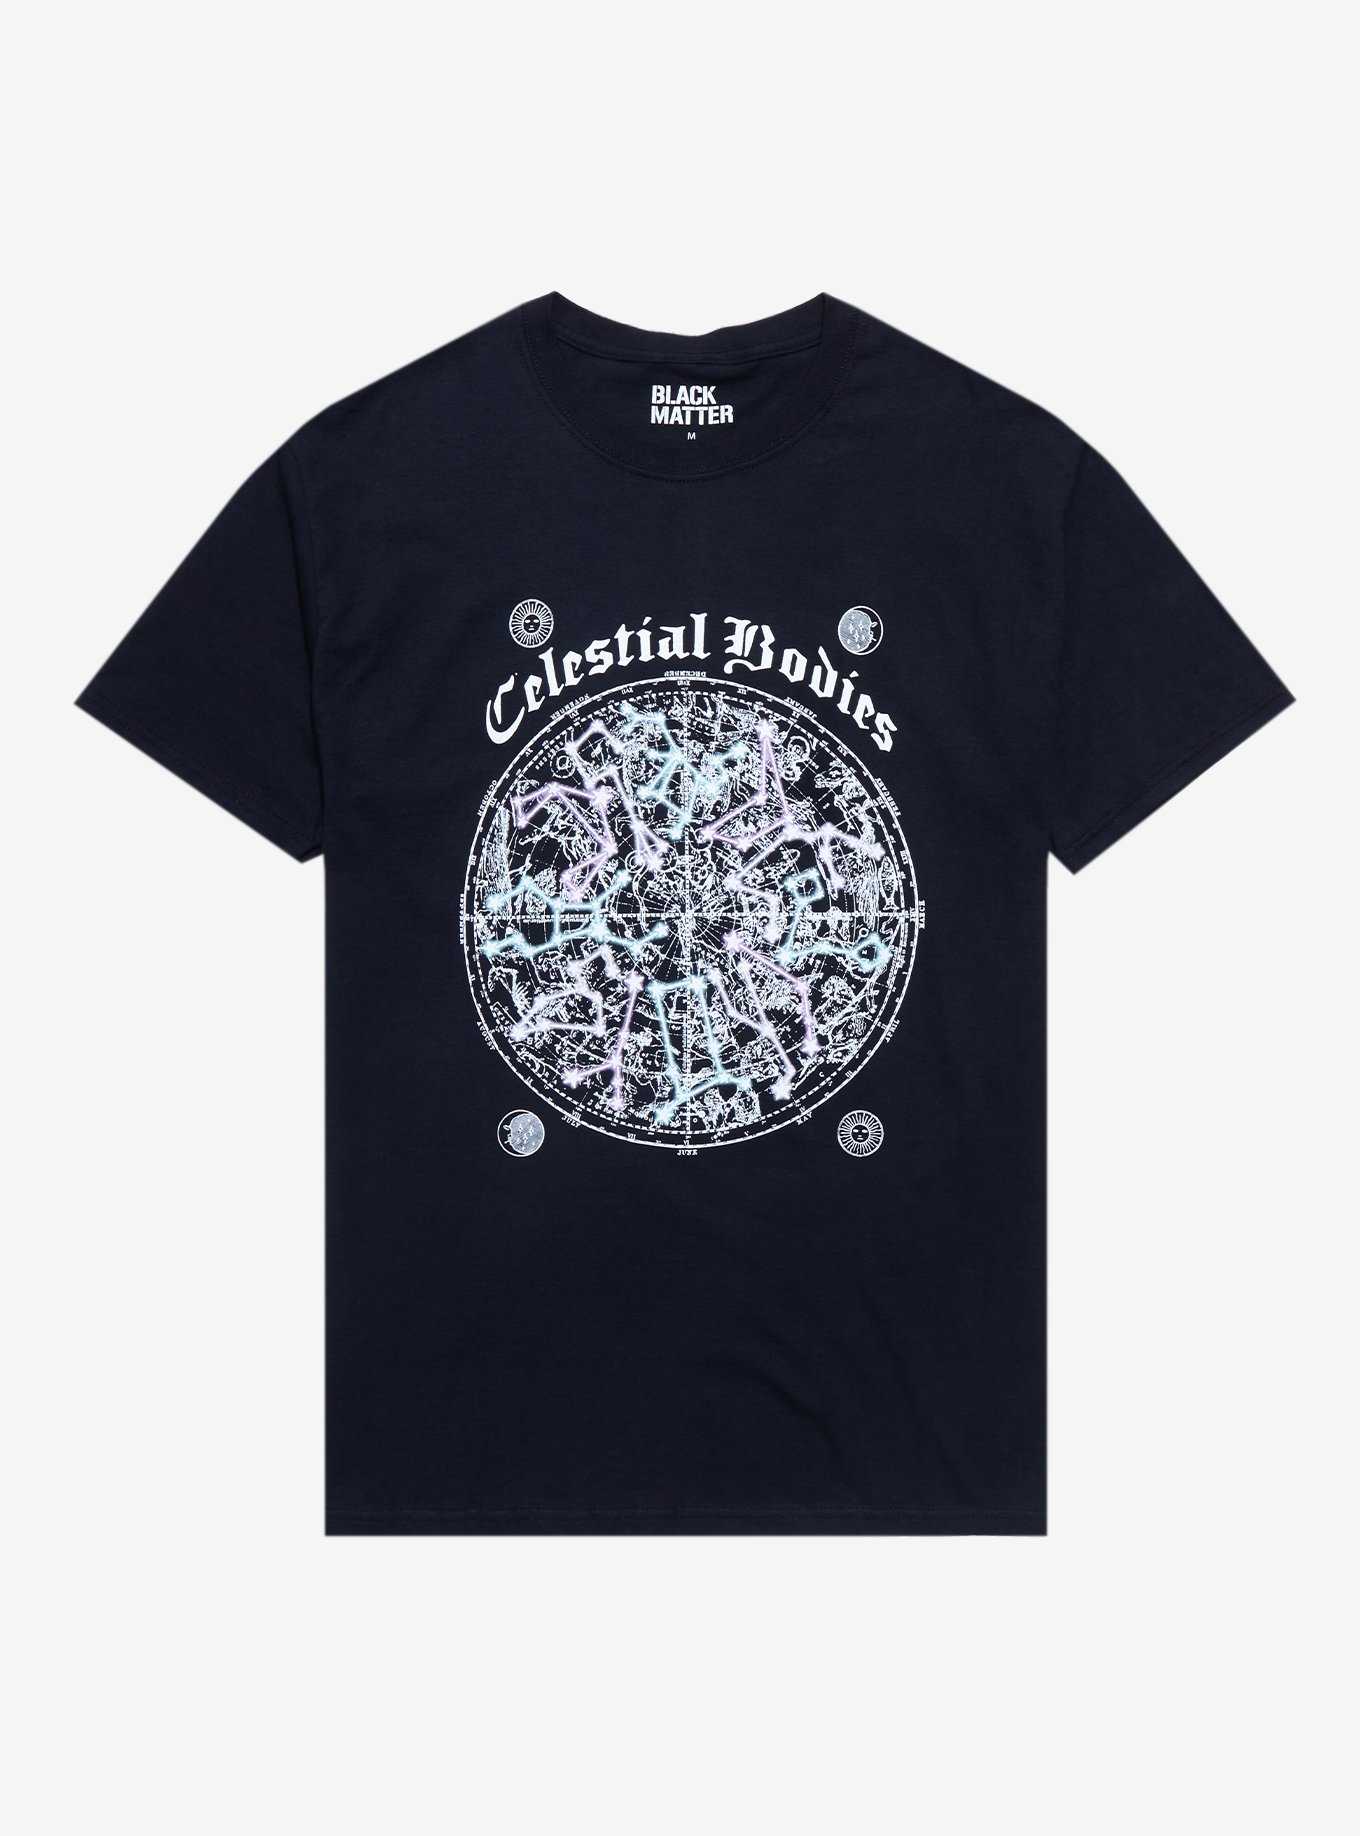 Celestial Bodies Diagram Boyfriend Fit Girls T-Shirt, , hi-res